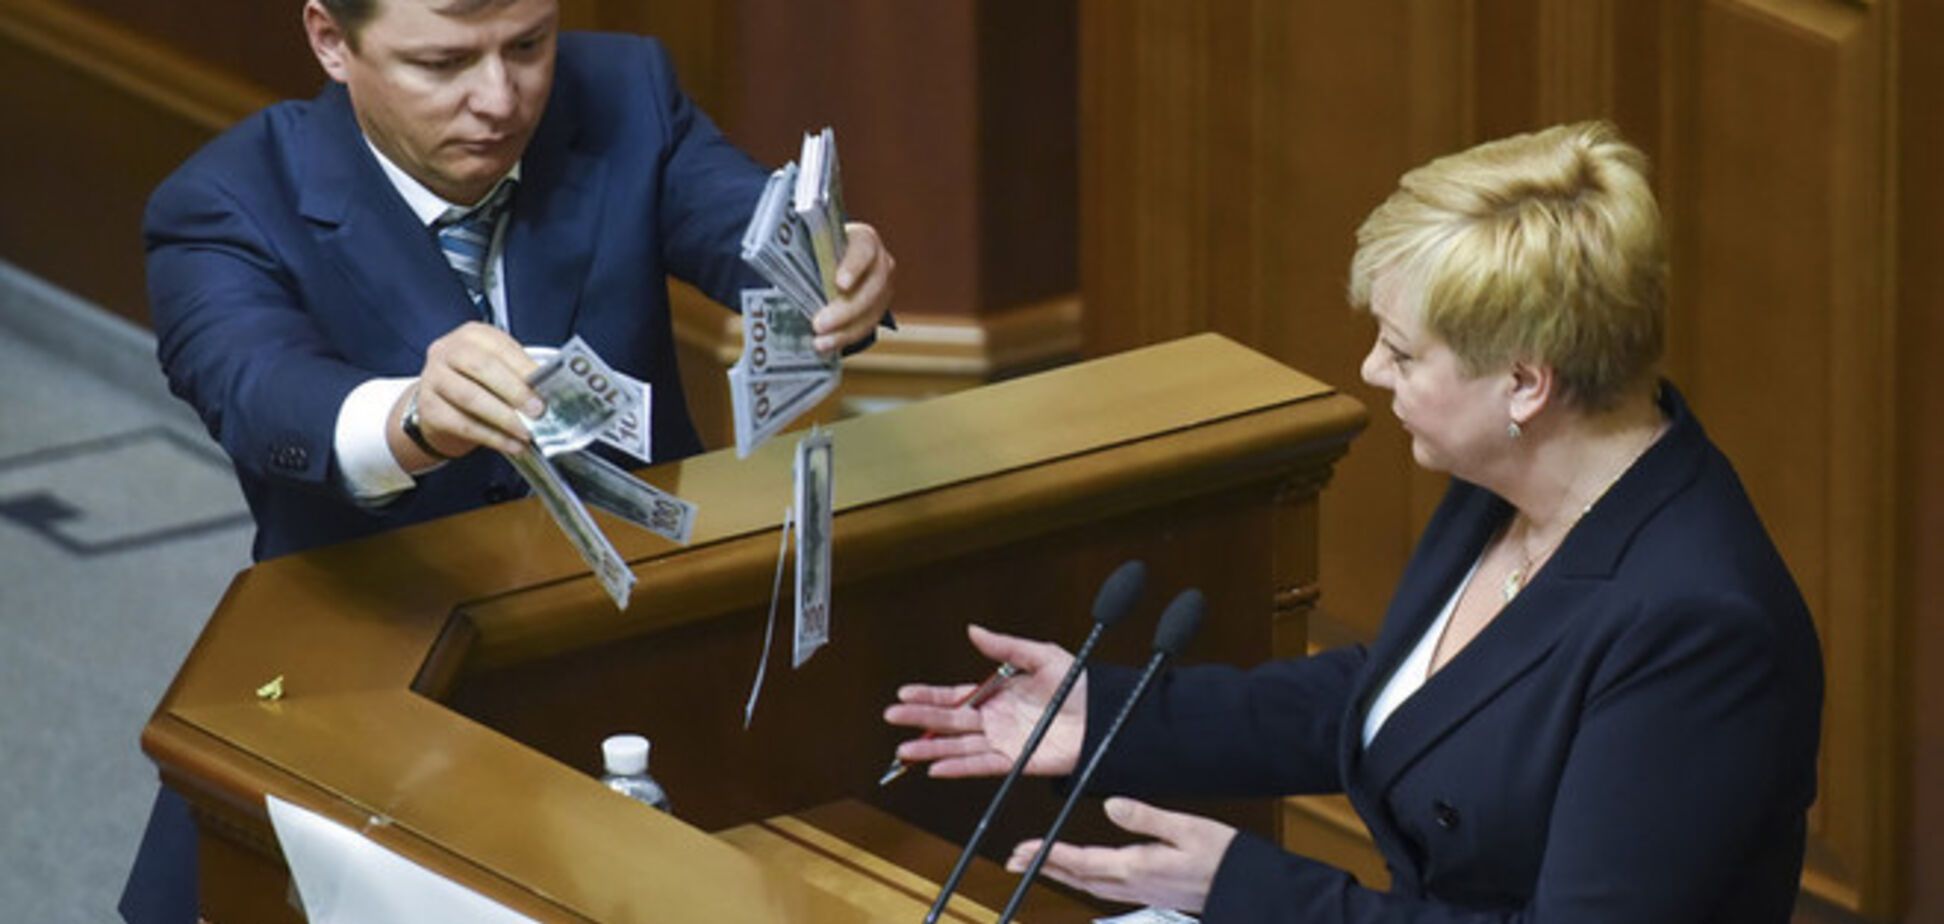 Порошенко призвал Ляшко извиниться перед Гонтаревой за 'хамское' поведение, тот отказался – СМИ